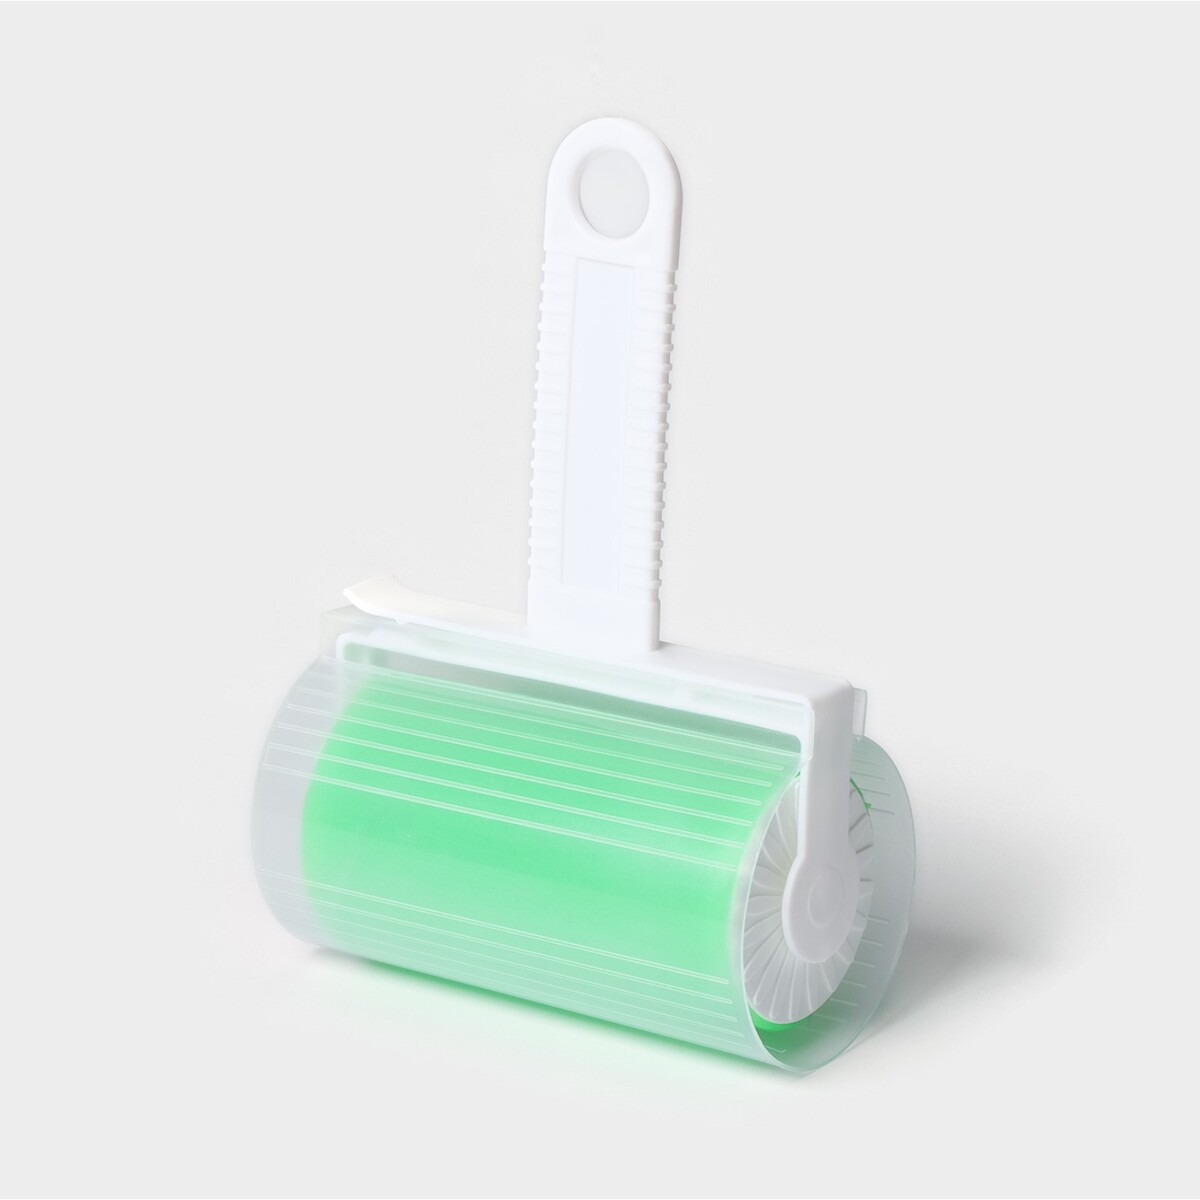 Ролик для чистки одежды в футляре силиконовый, 17×11×6 см, цвет зеленый ролик для чистки одежды perfect 60 листов с двумя сменными блоками